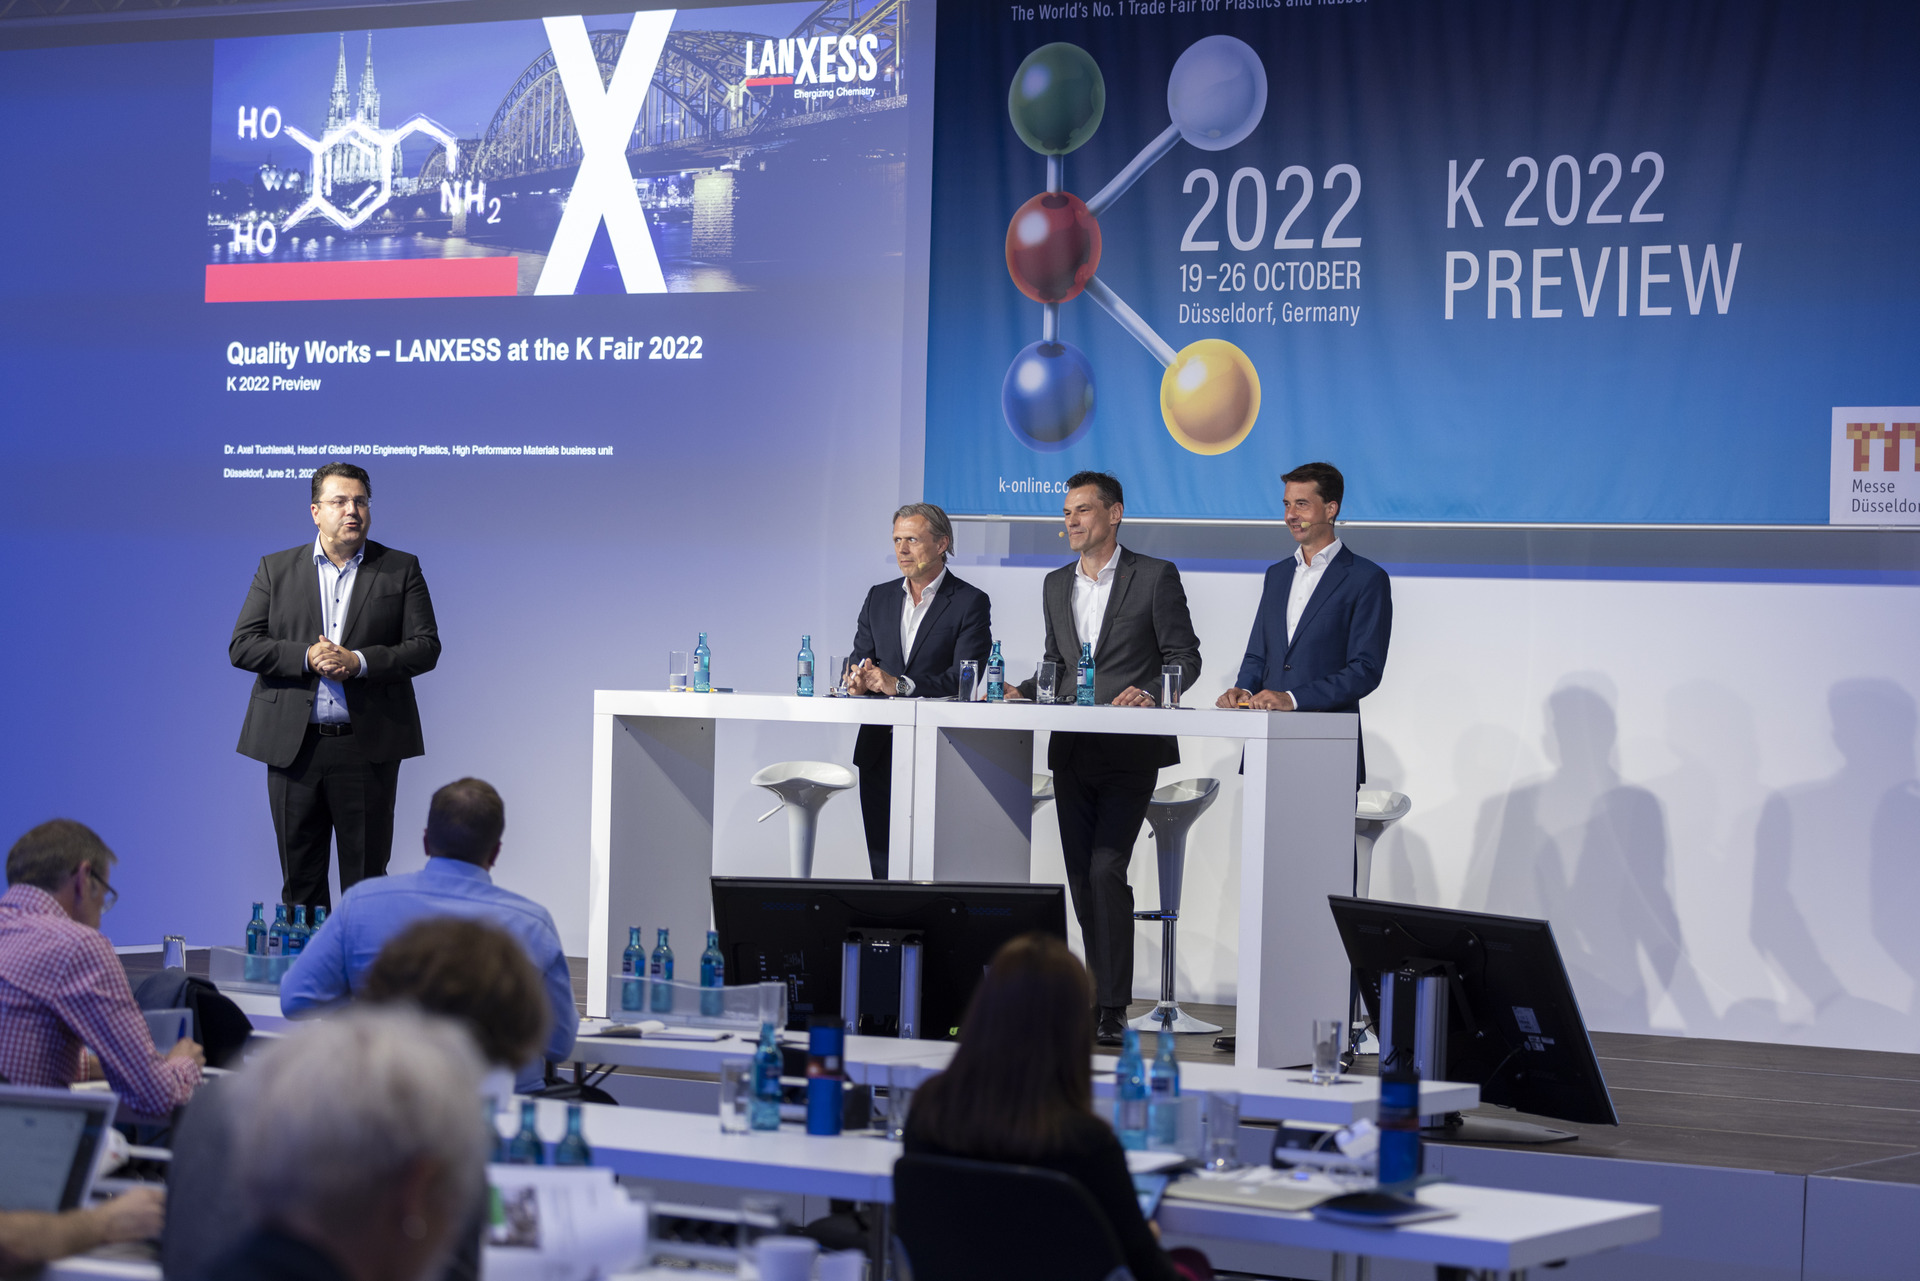 LANXESS stellt auf der K 2022 Materialentwicklungen sowie neue Verfahren und Technologien für die Kunststoffbranche vor.